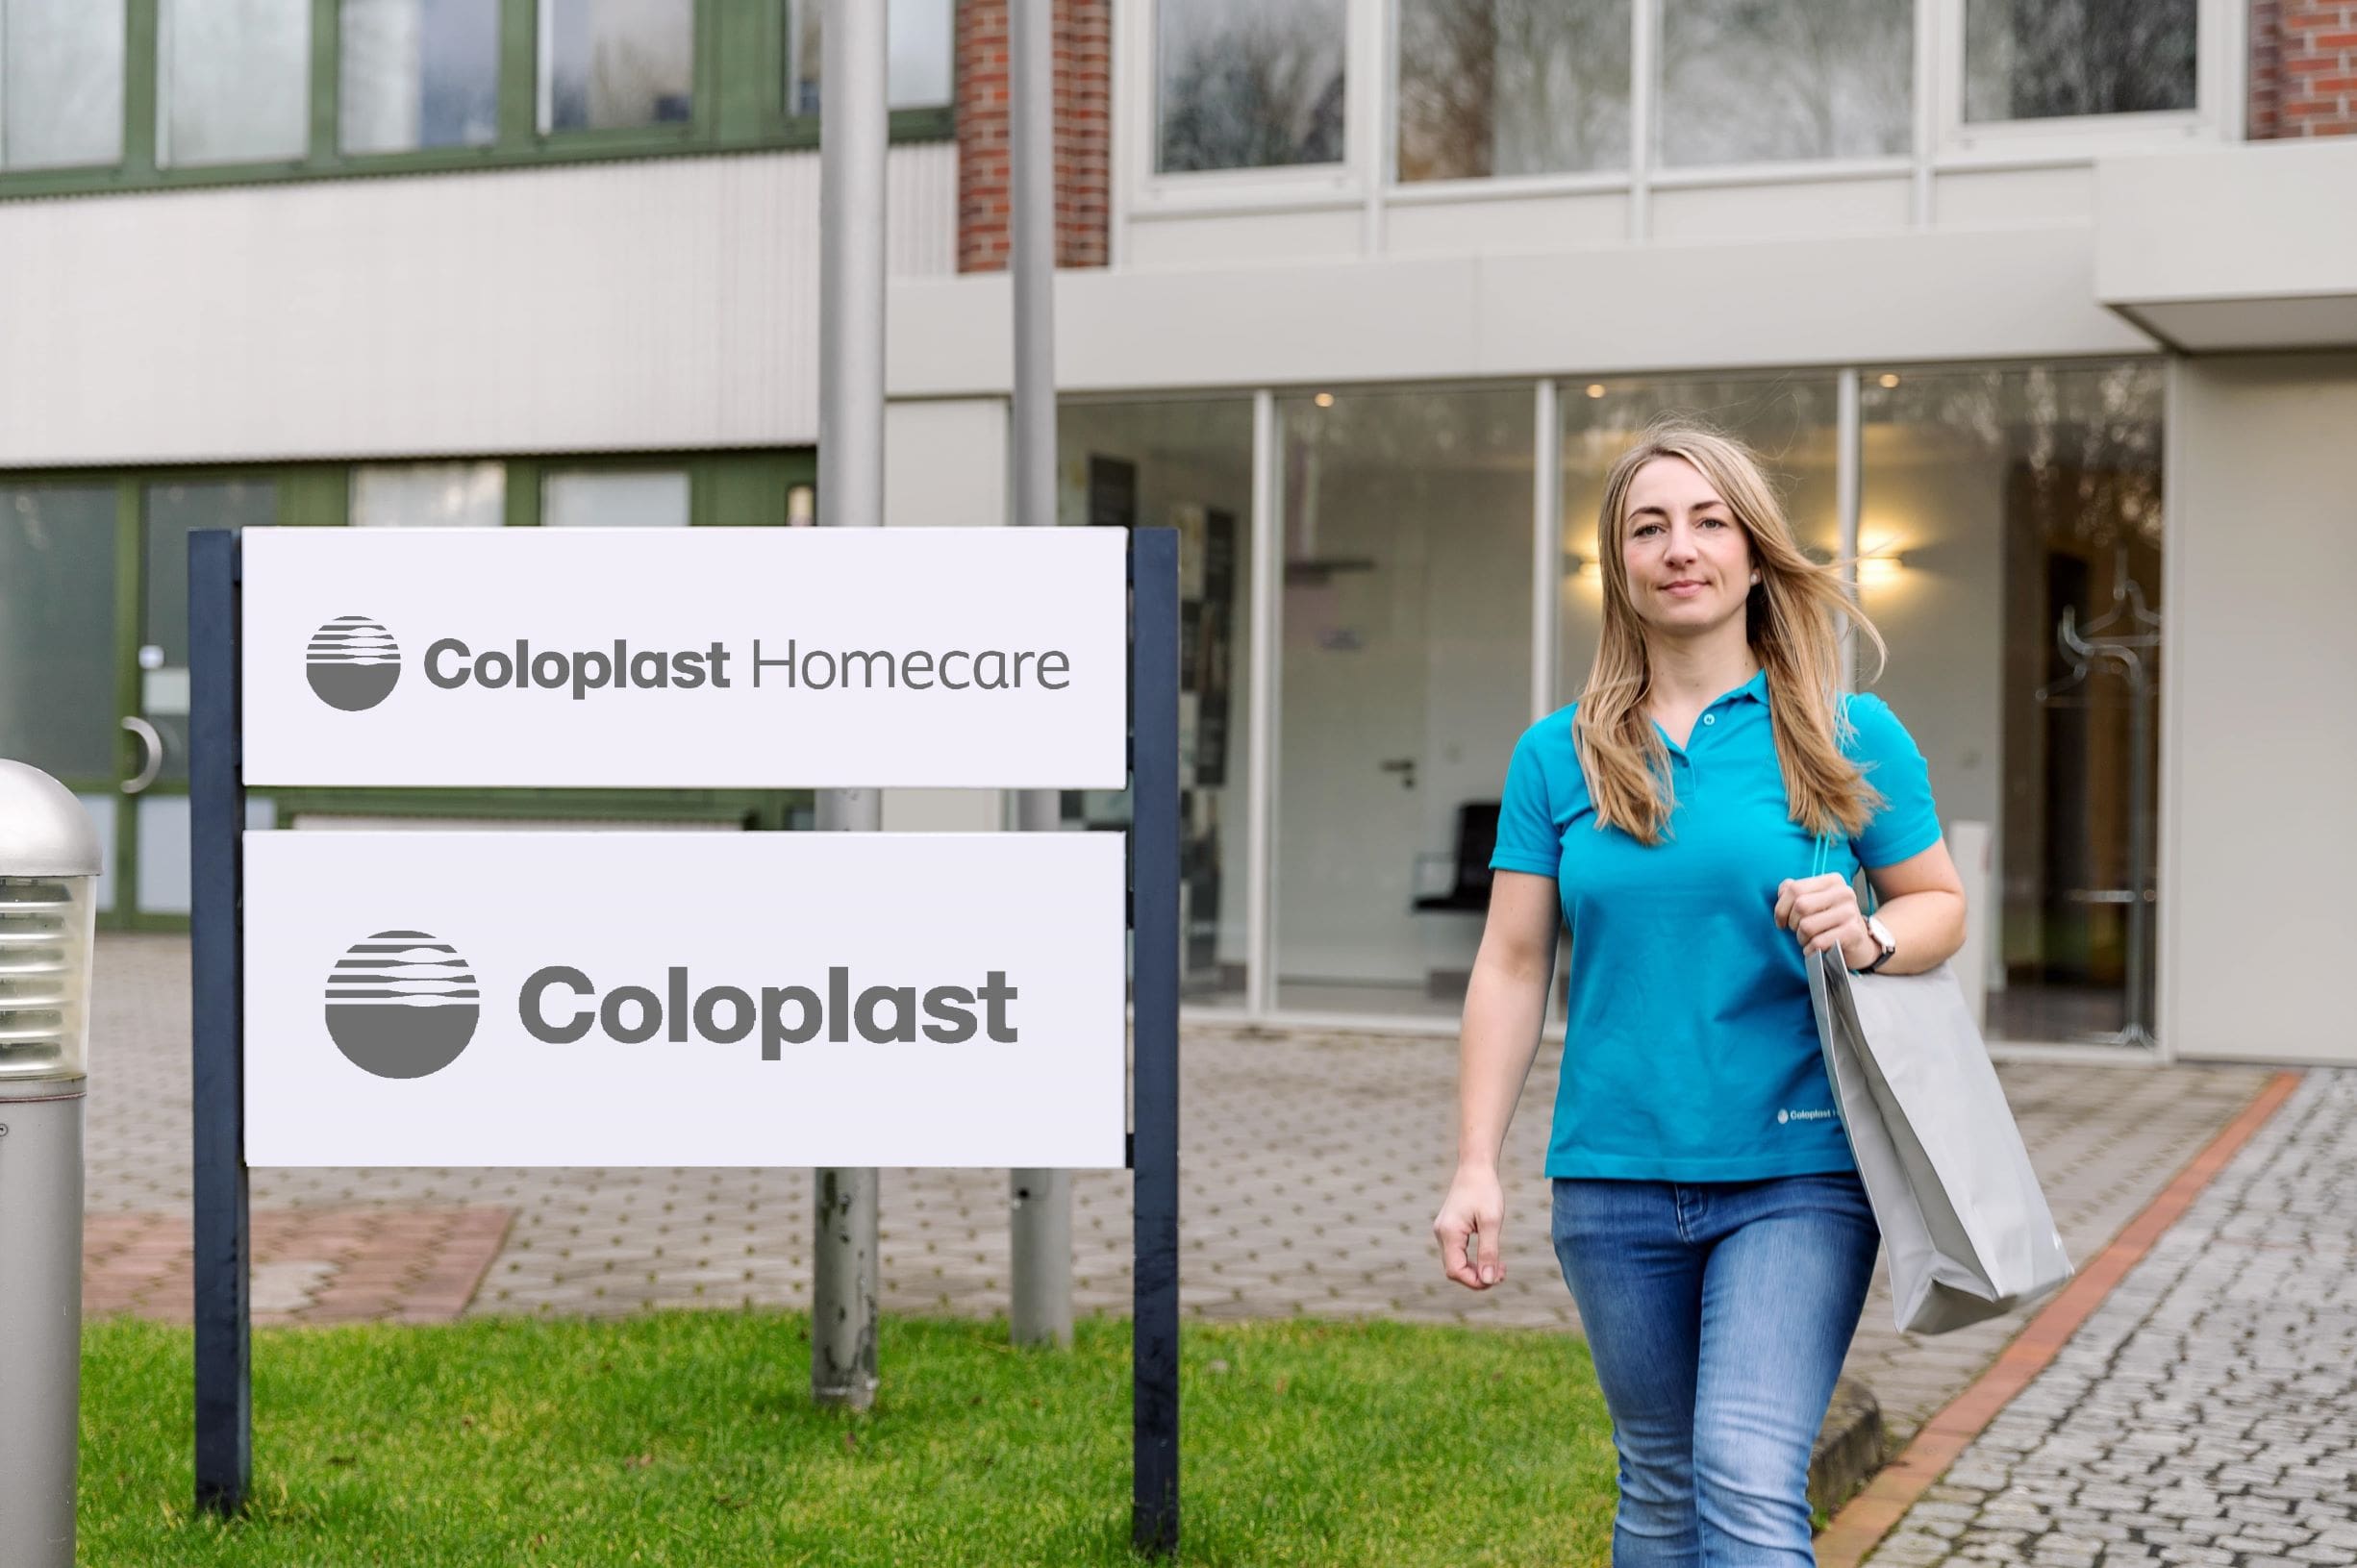 Das Coloplast-Homecare-Team ist bereit, alle unsere Patienten zu unterstützen